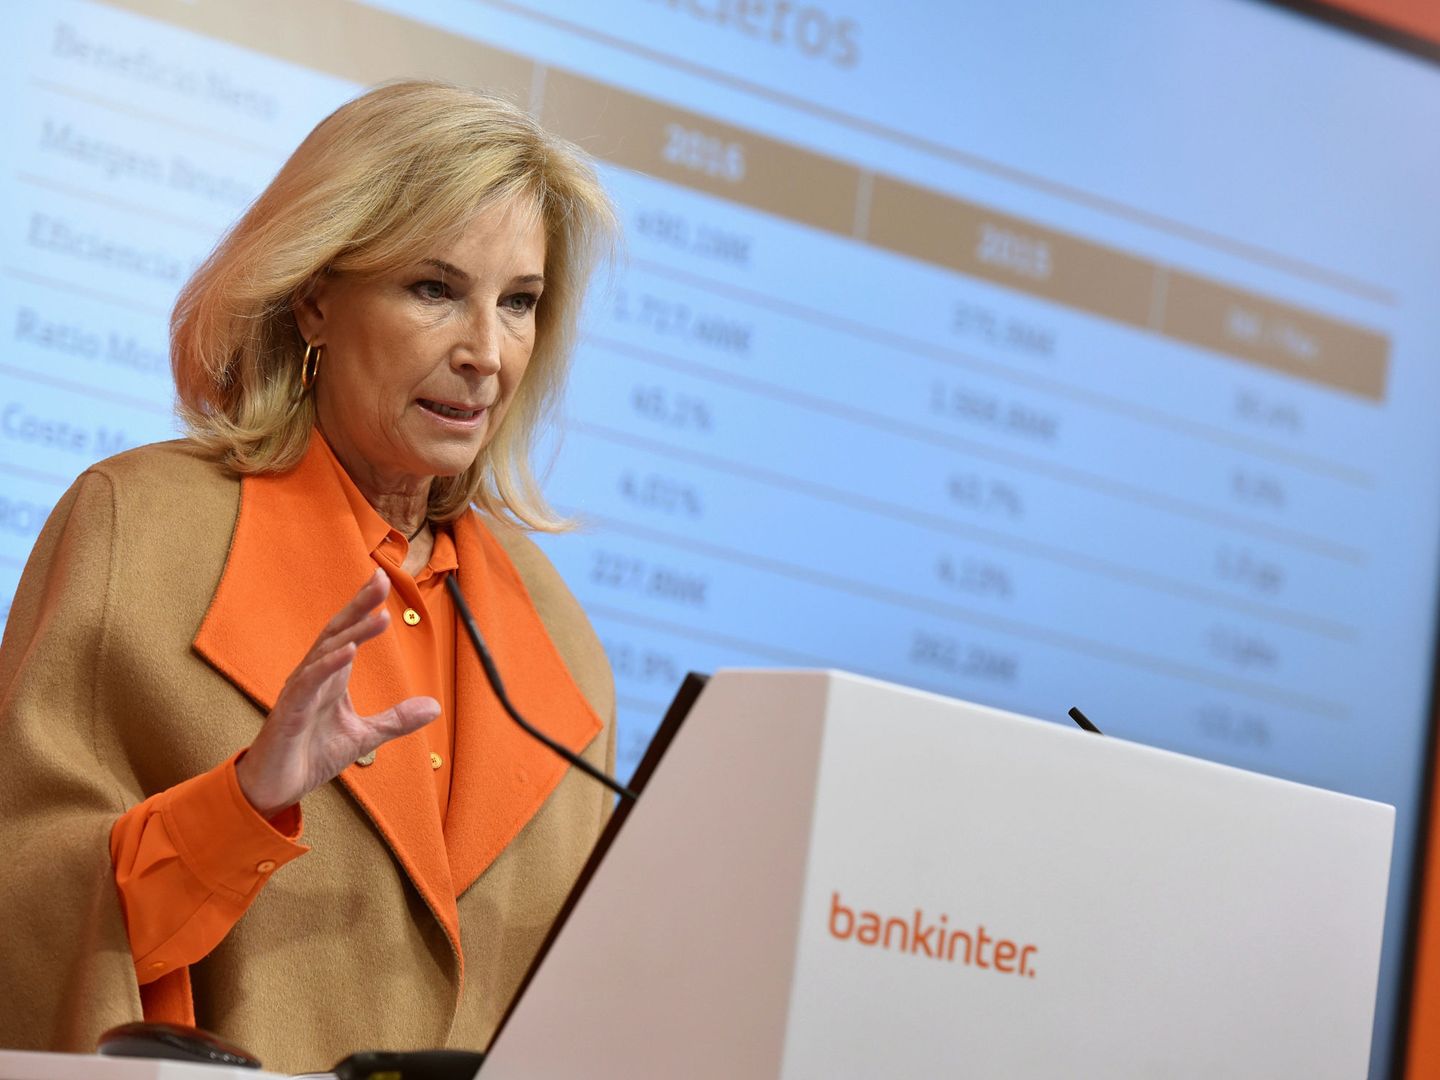 La consejera delegada de Bankinter, María Dolores Dancausa. (EFE)